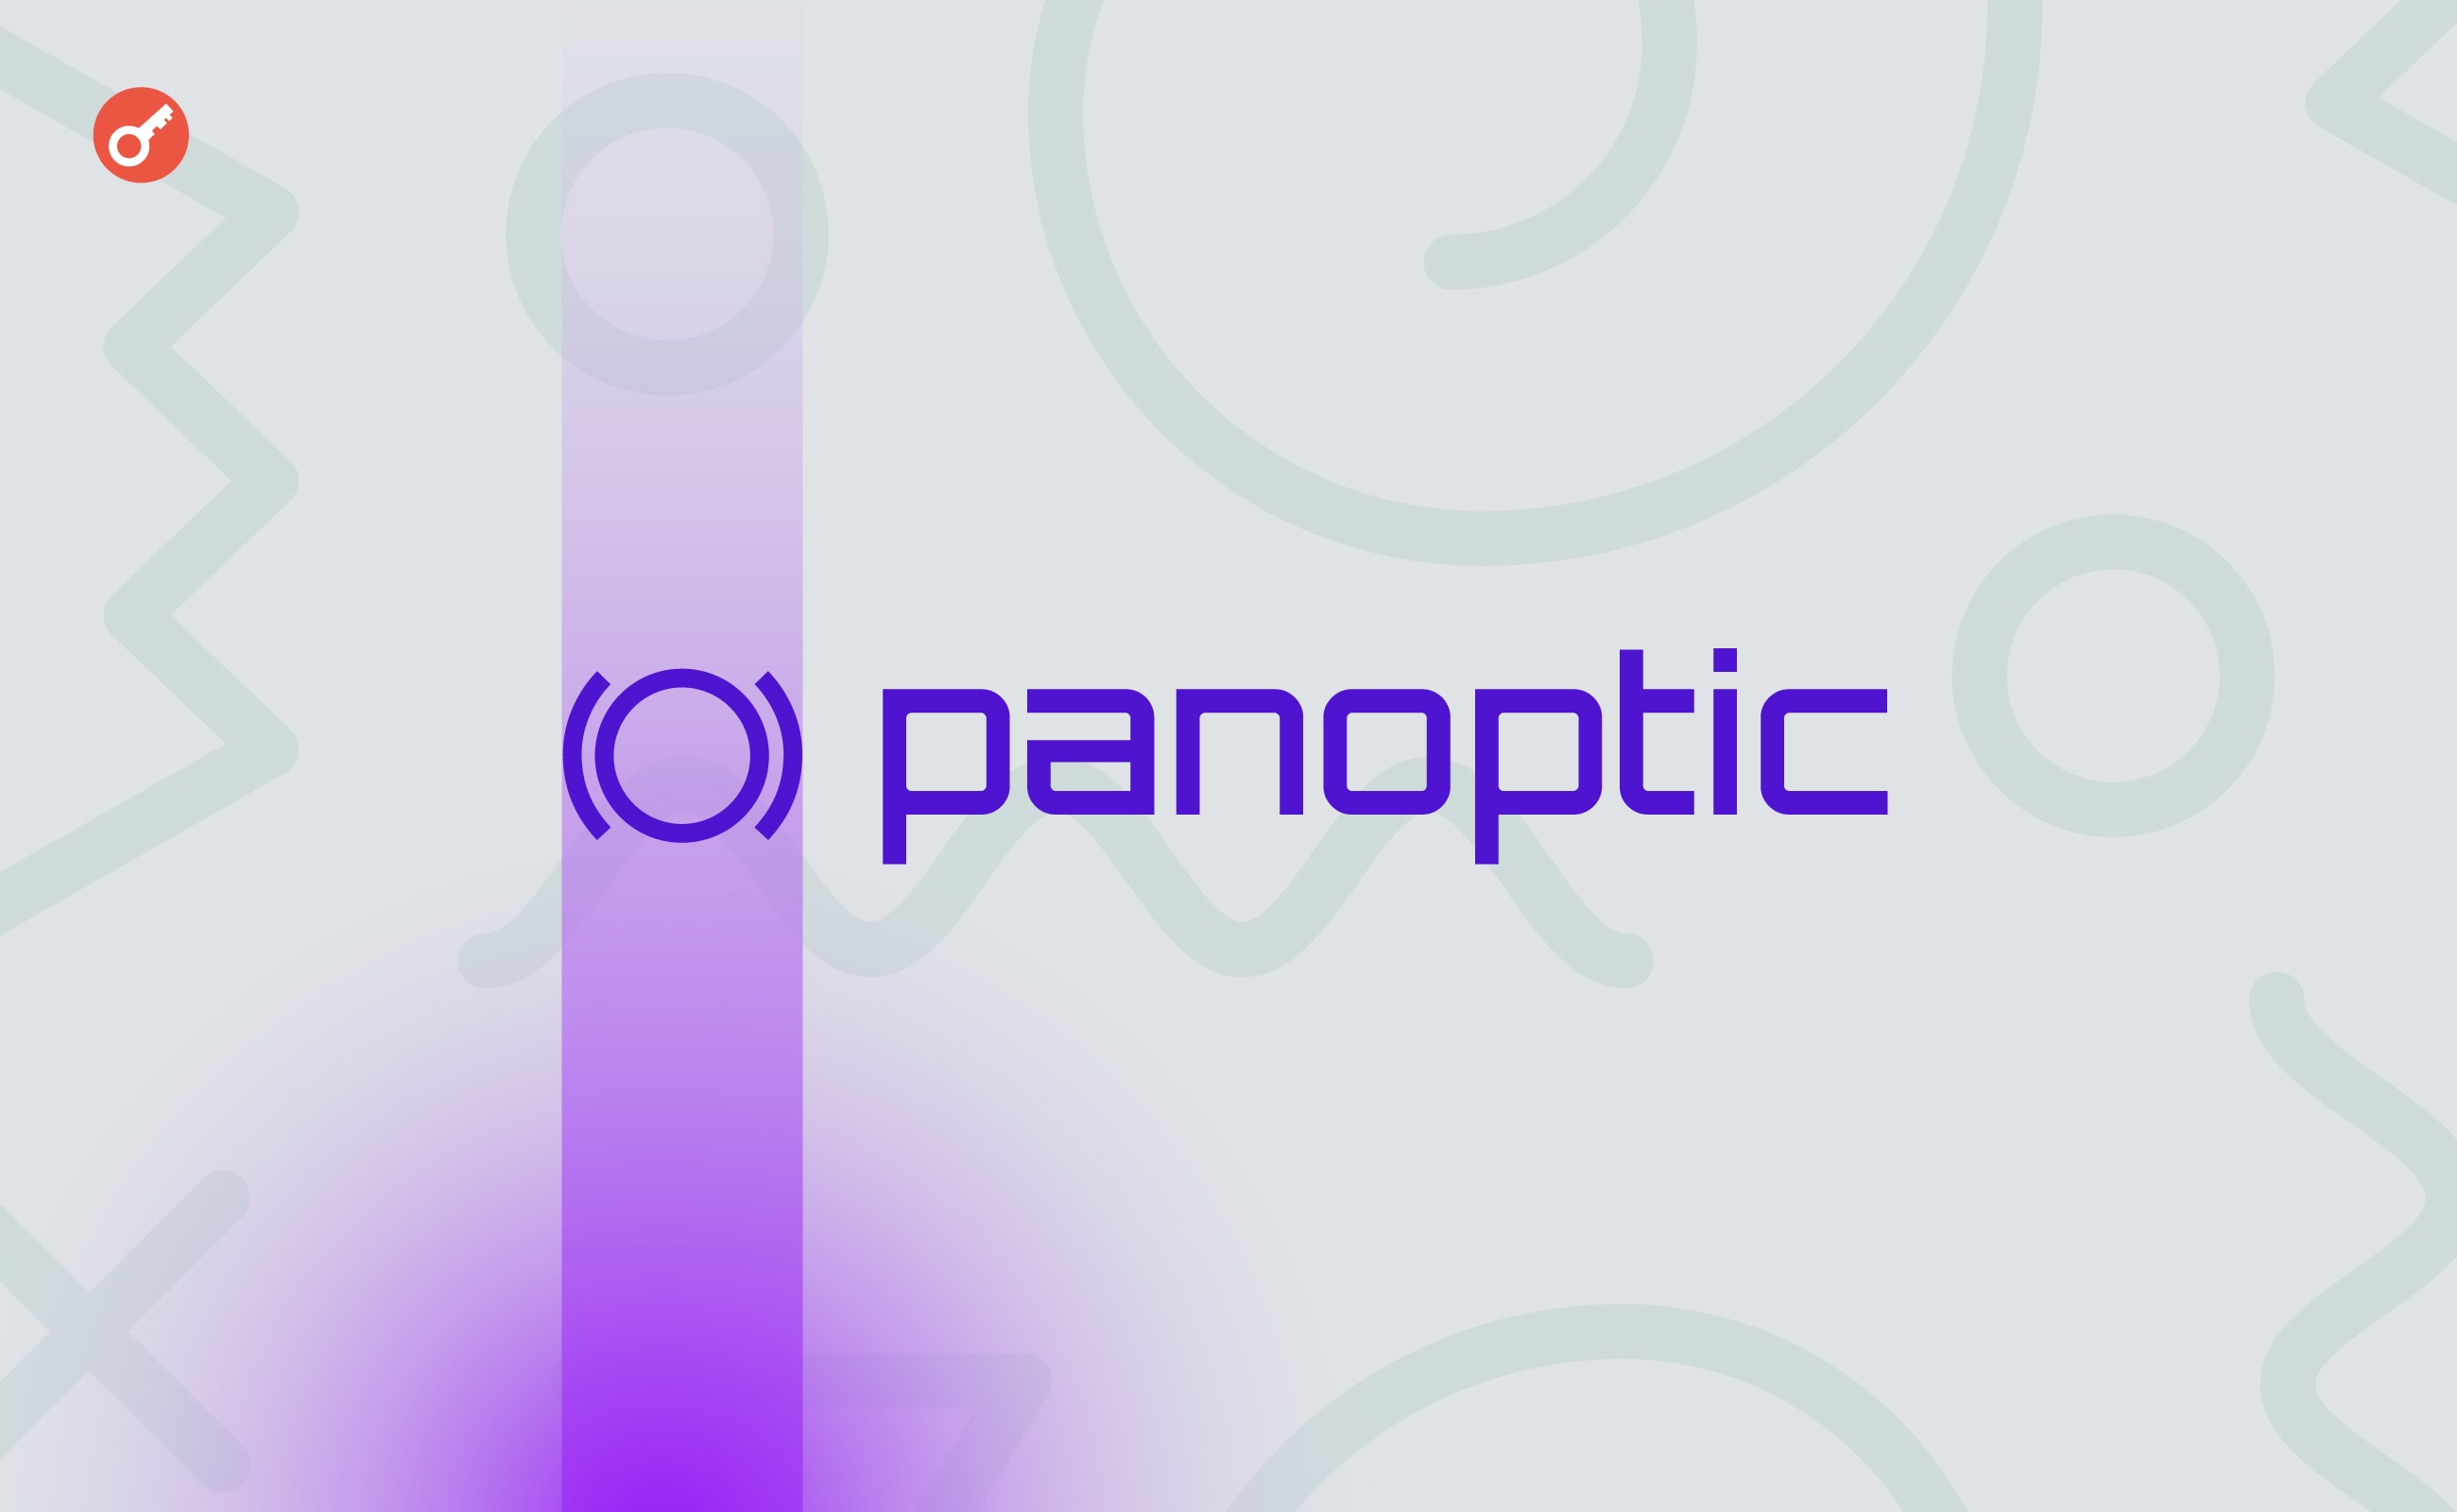 Протокол Panoptic залучив $7 млн на розвиток платформи безстрокових опціонів. Головний колаж новини.